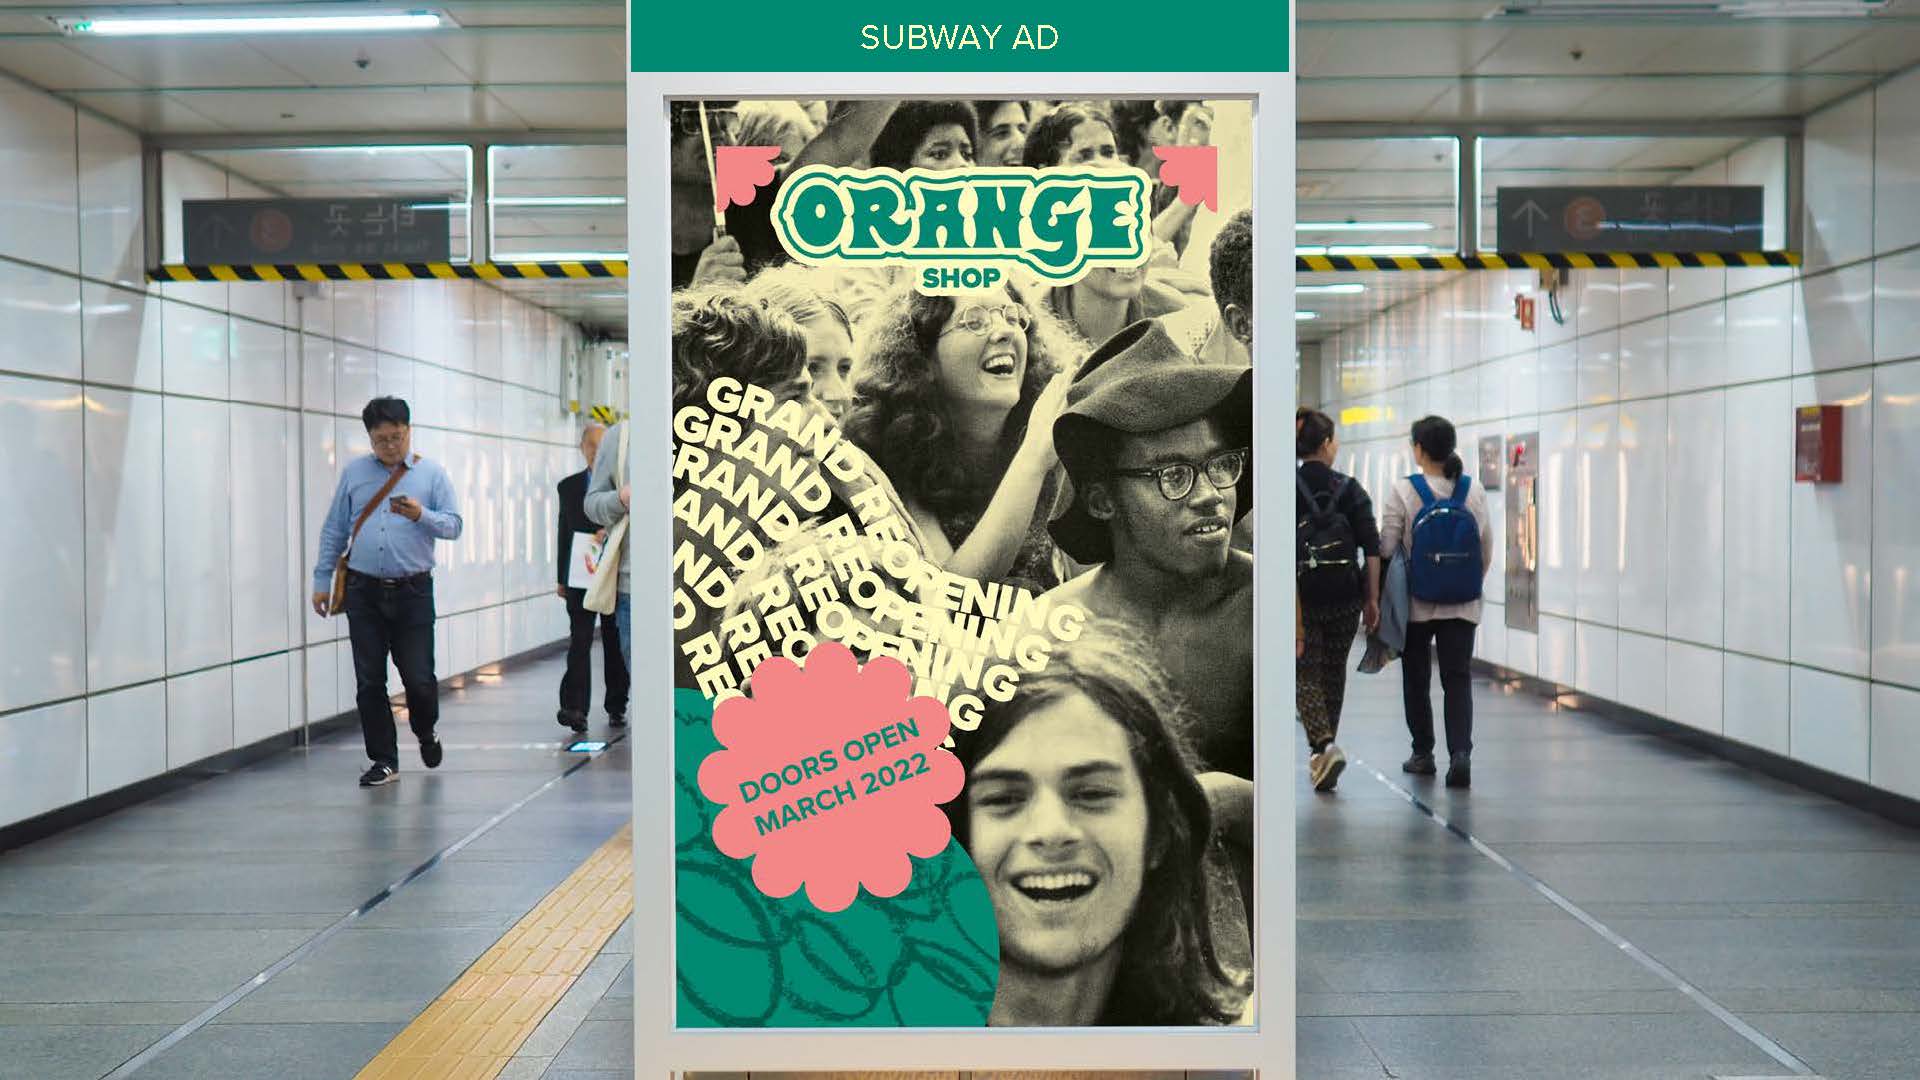 Orange subway ad mockup